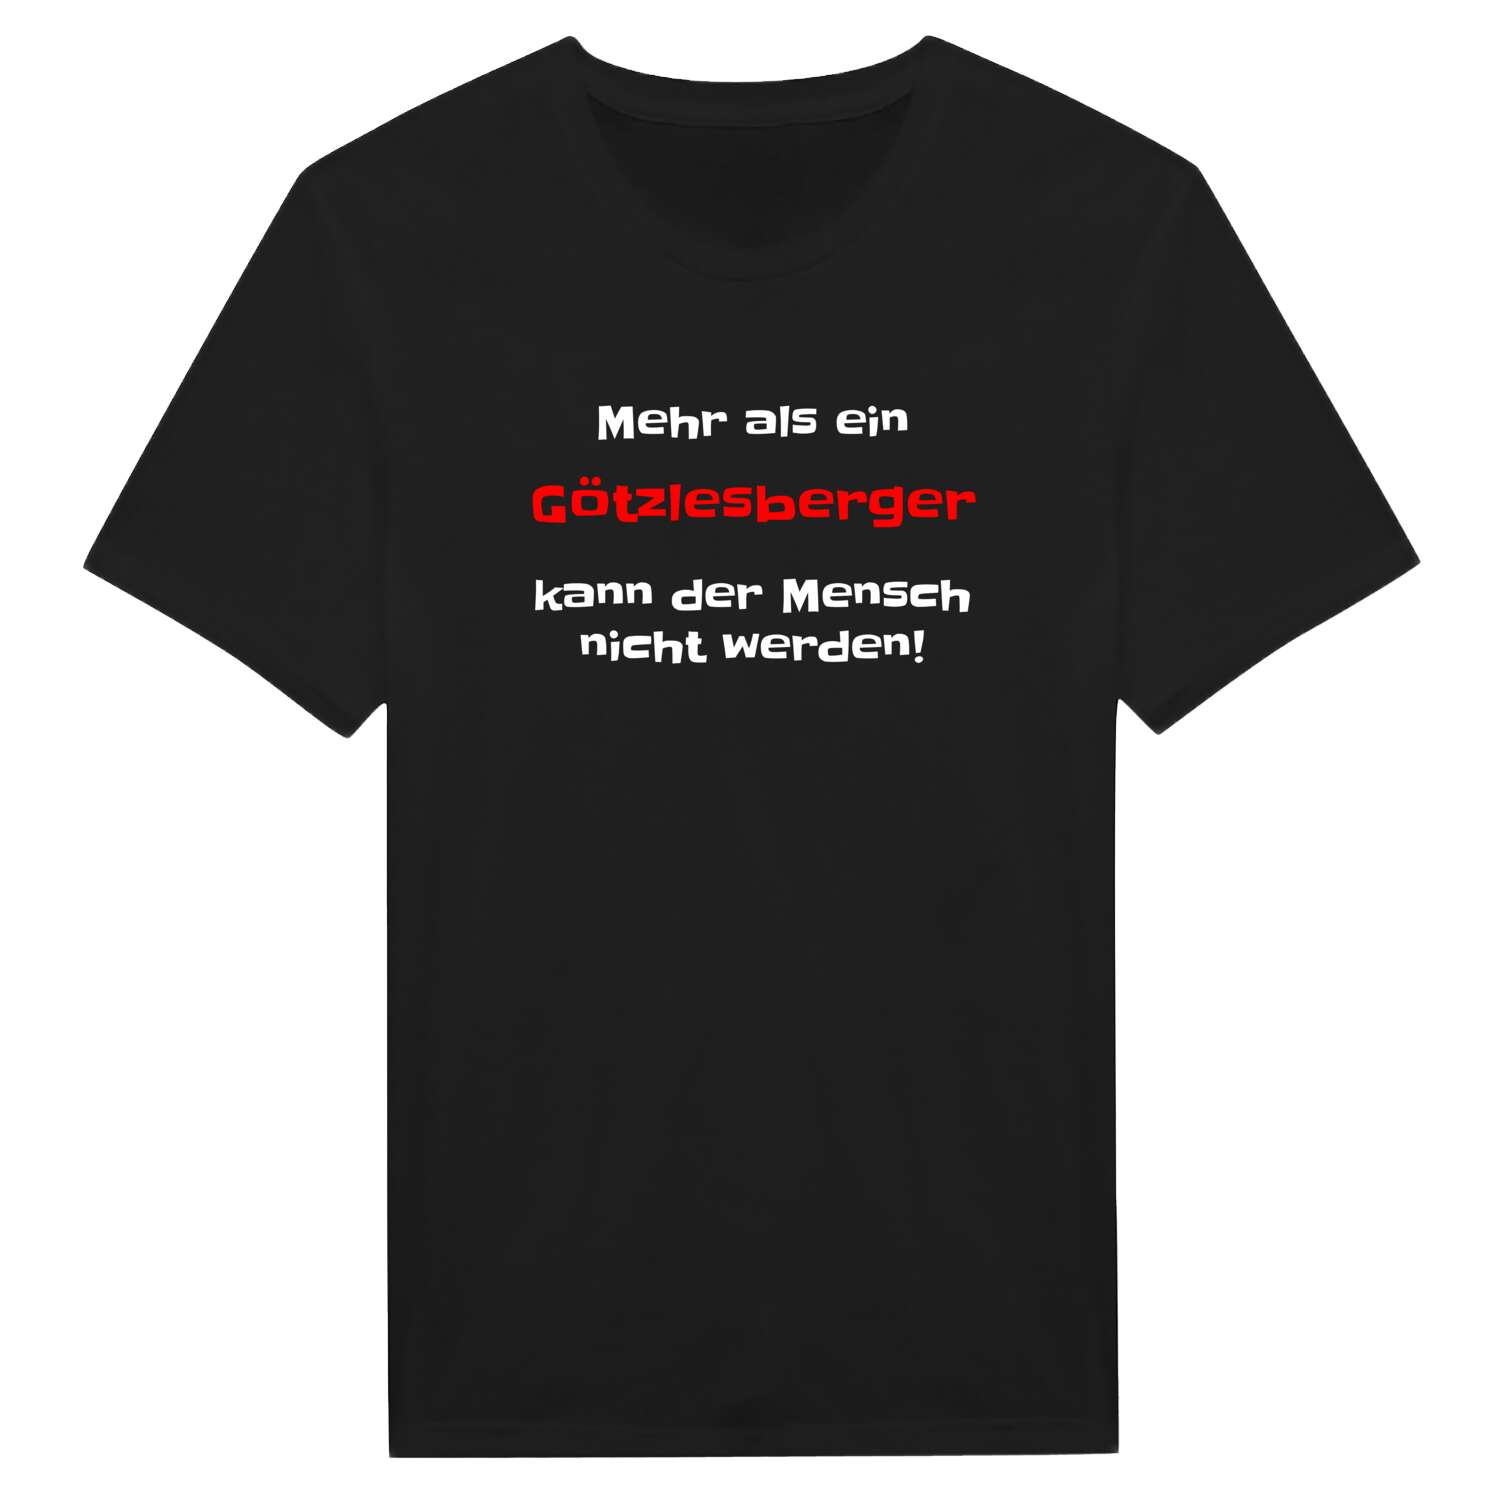 Götzlesberg T-Shirt »Mehr als ein«